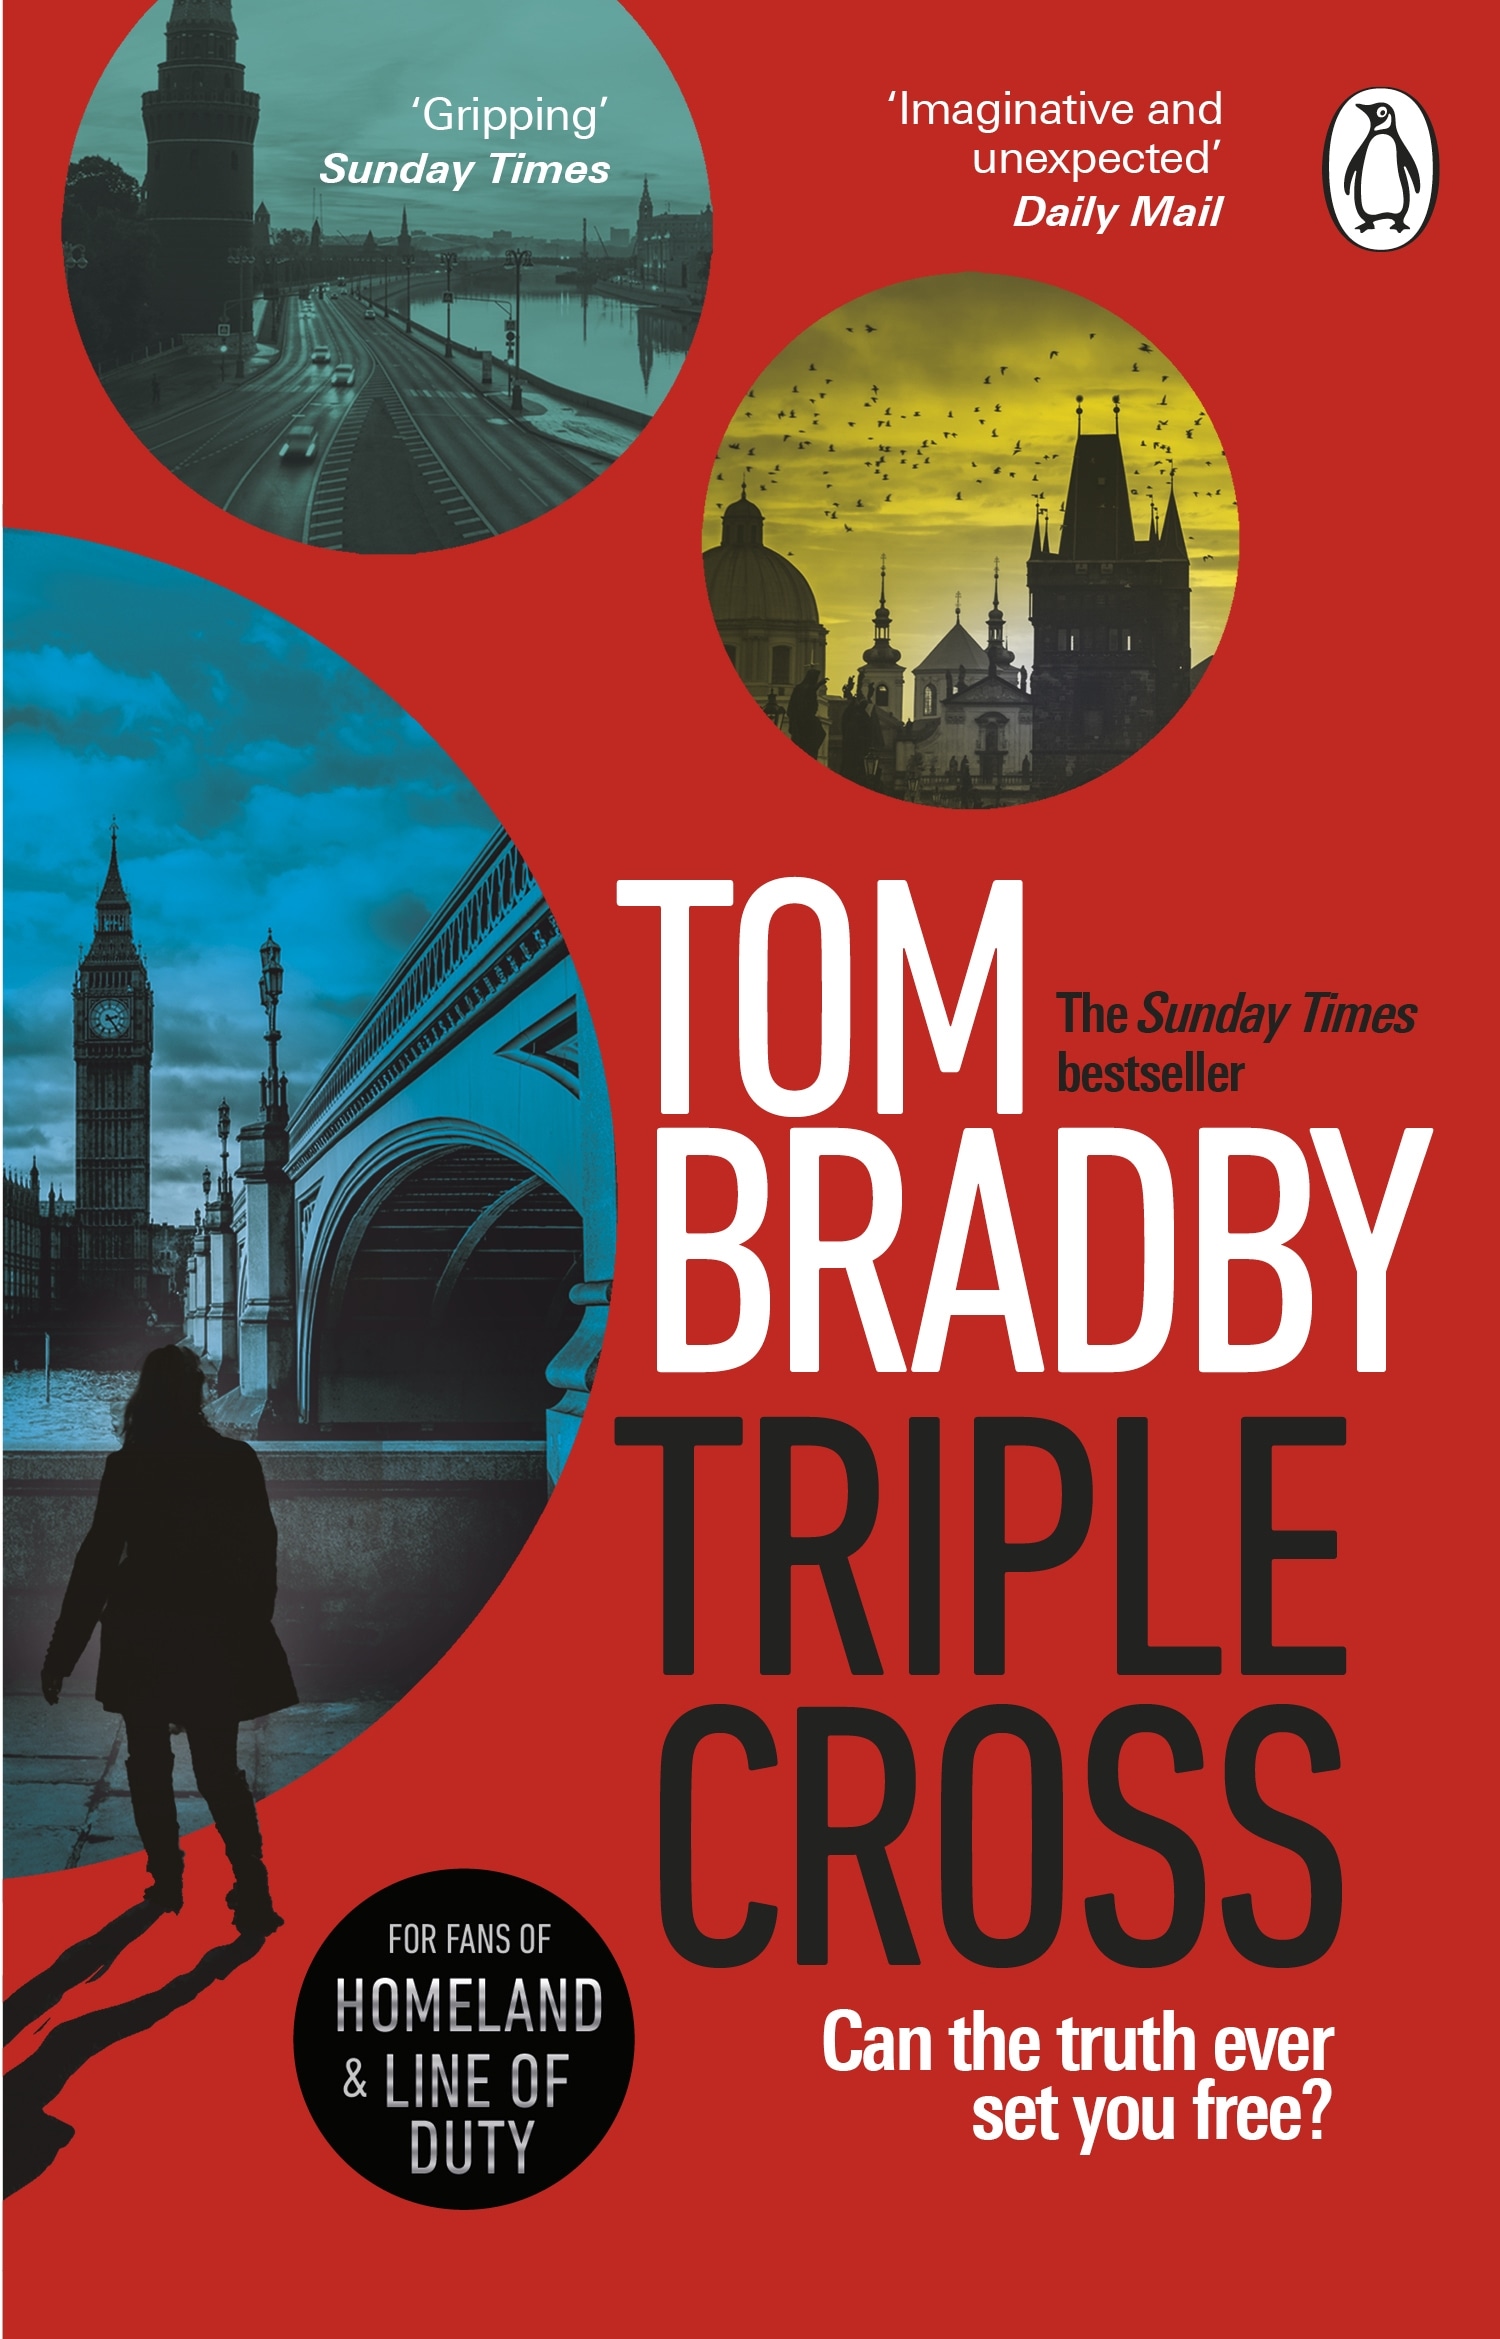 Book “Triple Cross” by Tom Bradby — April 28, 2022